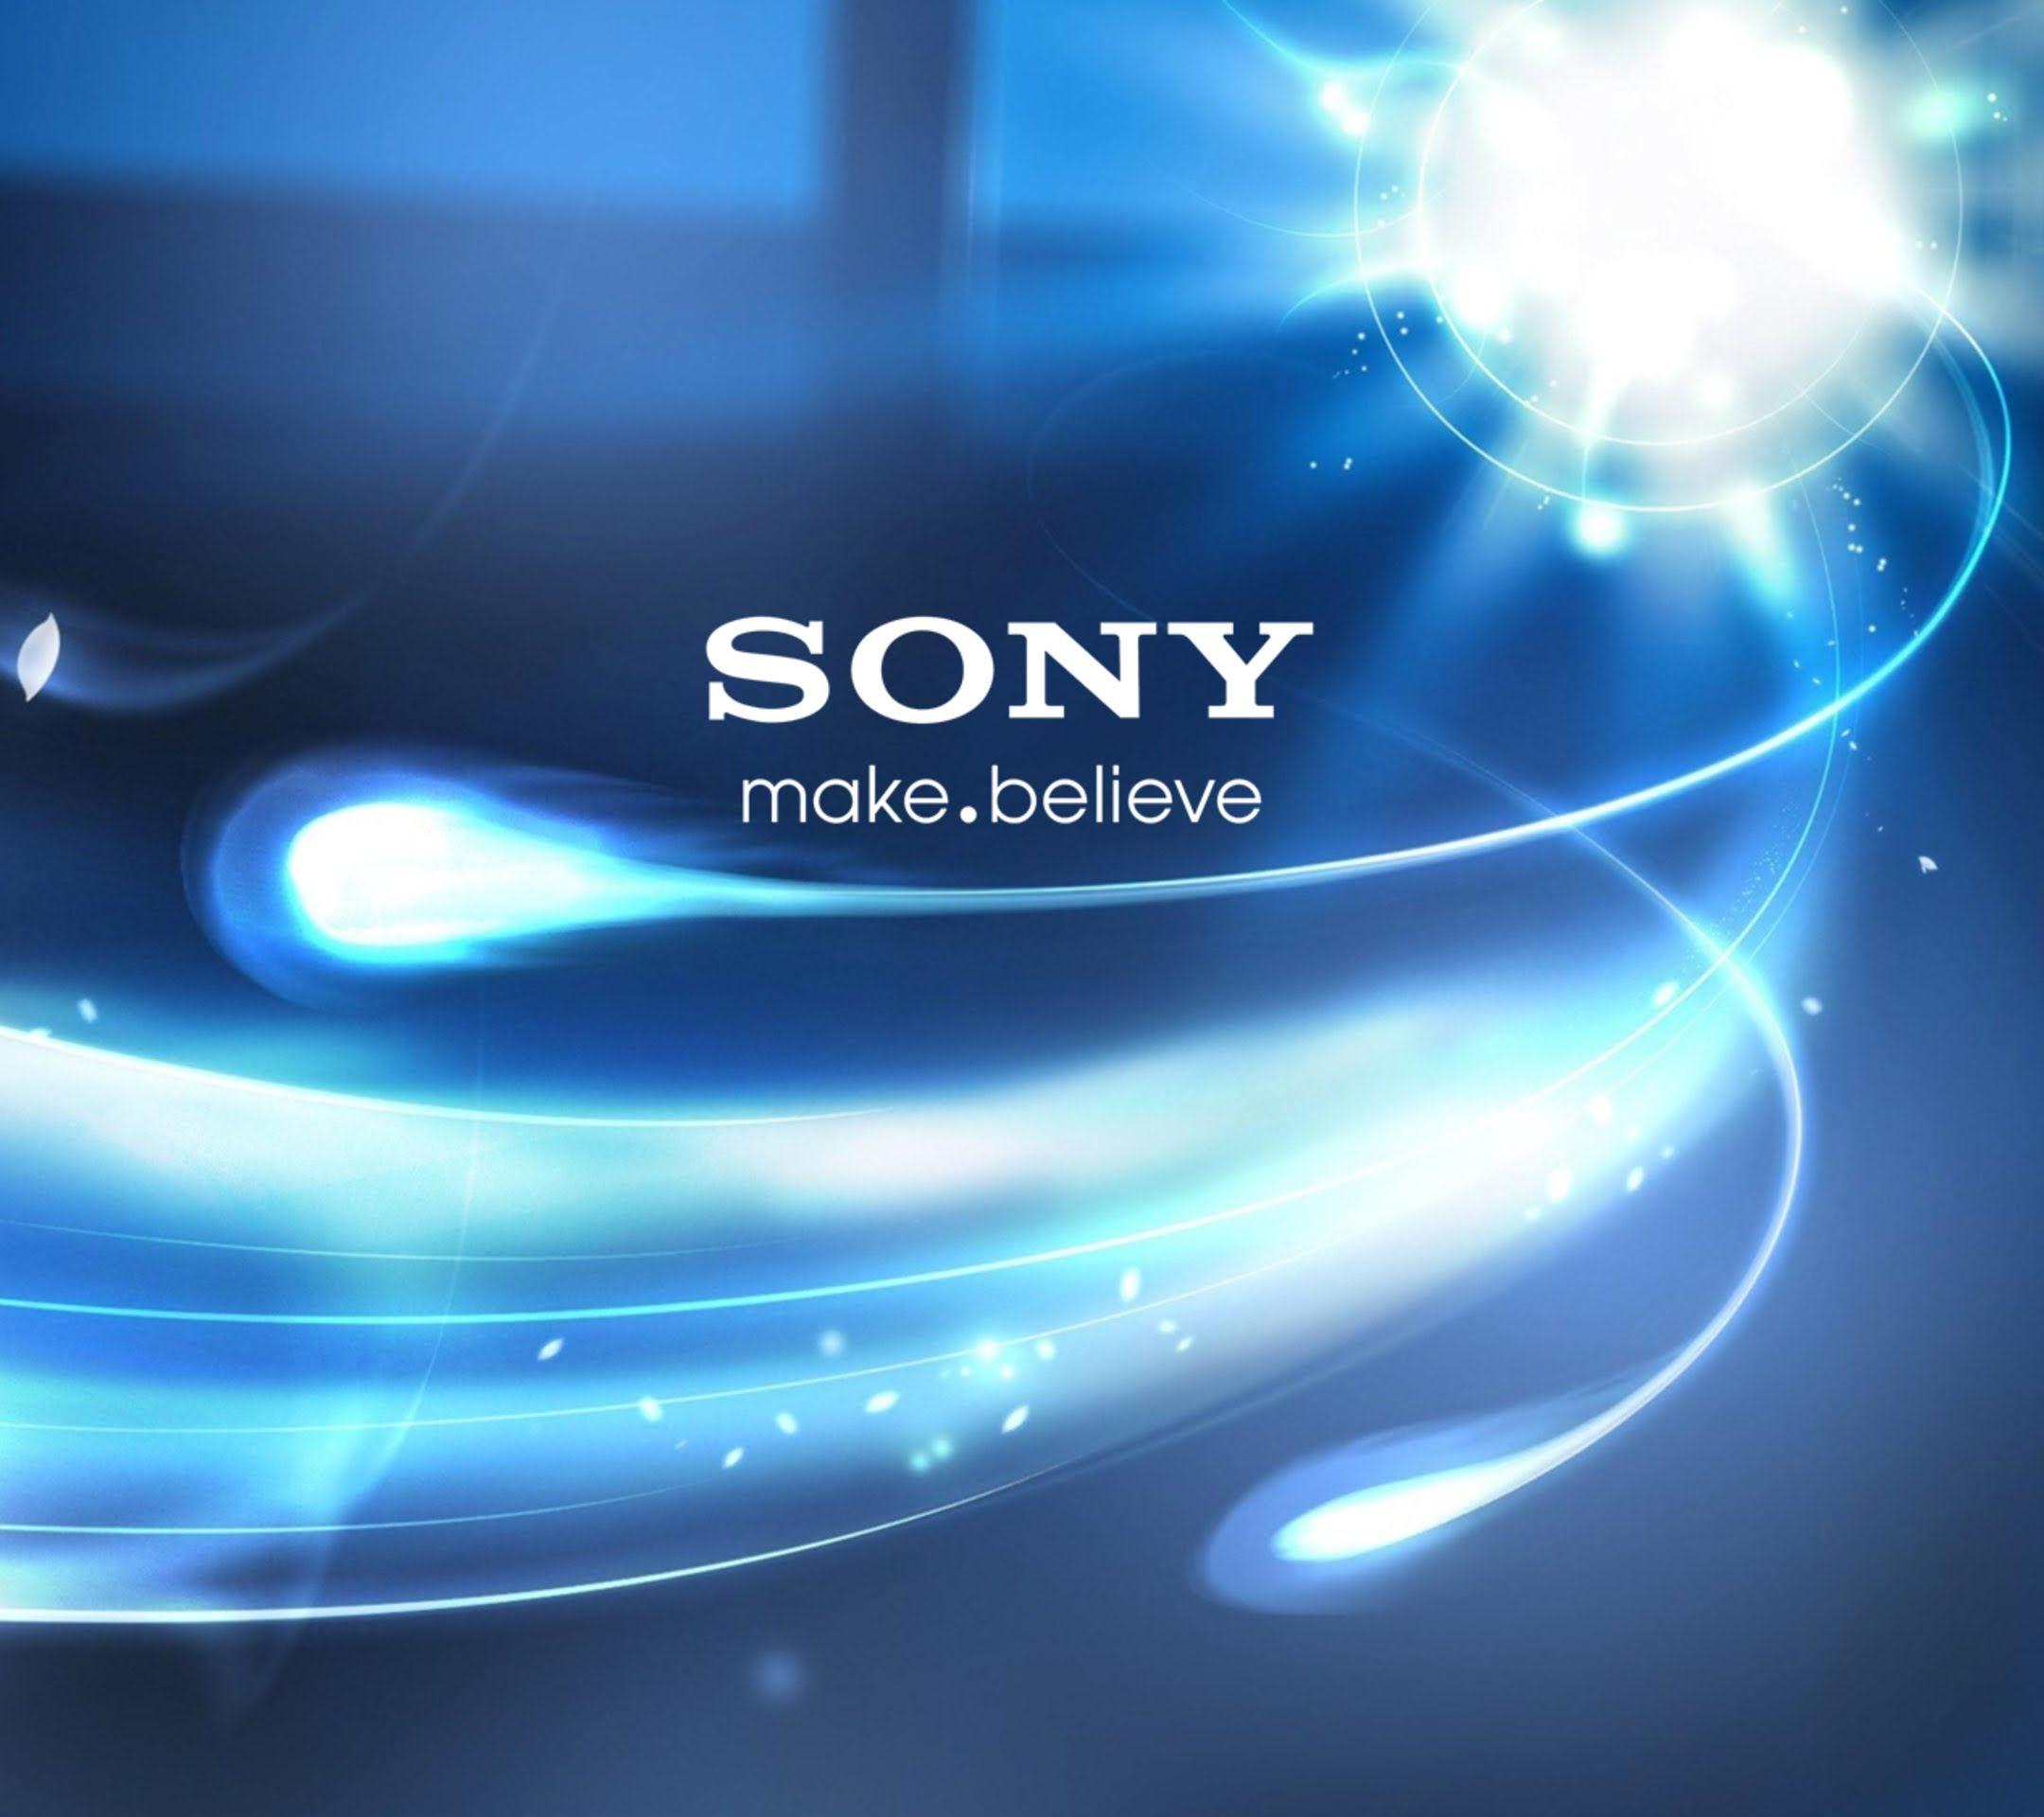 Sony Xperia Z3 TimeLapse HD